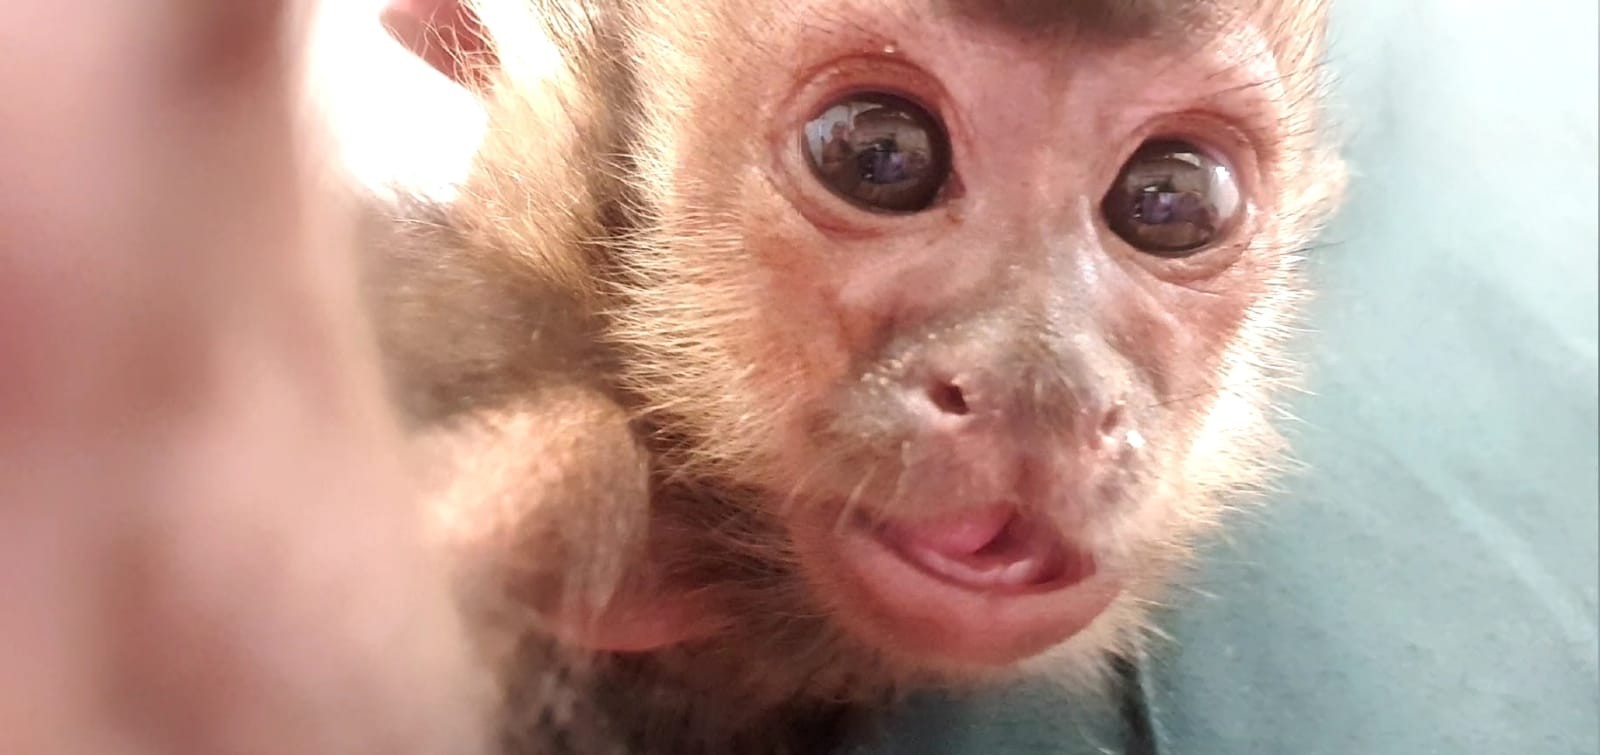 Filhote de macaco-prego resgatado em SC bate mão na tela do celular e é registrado em foto que parece 'selfie'